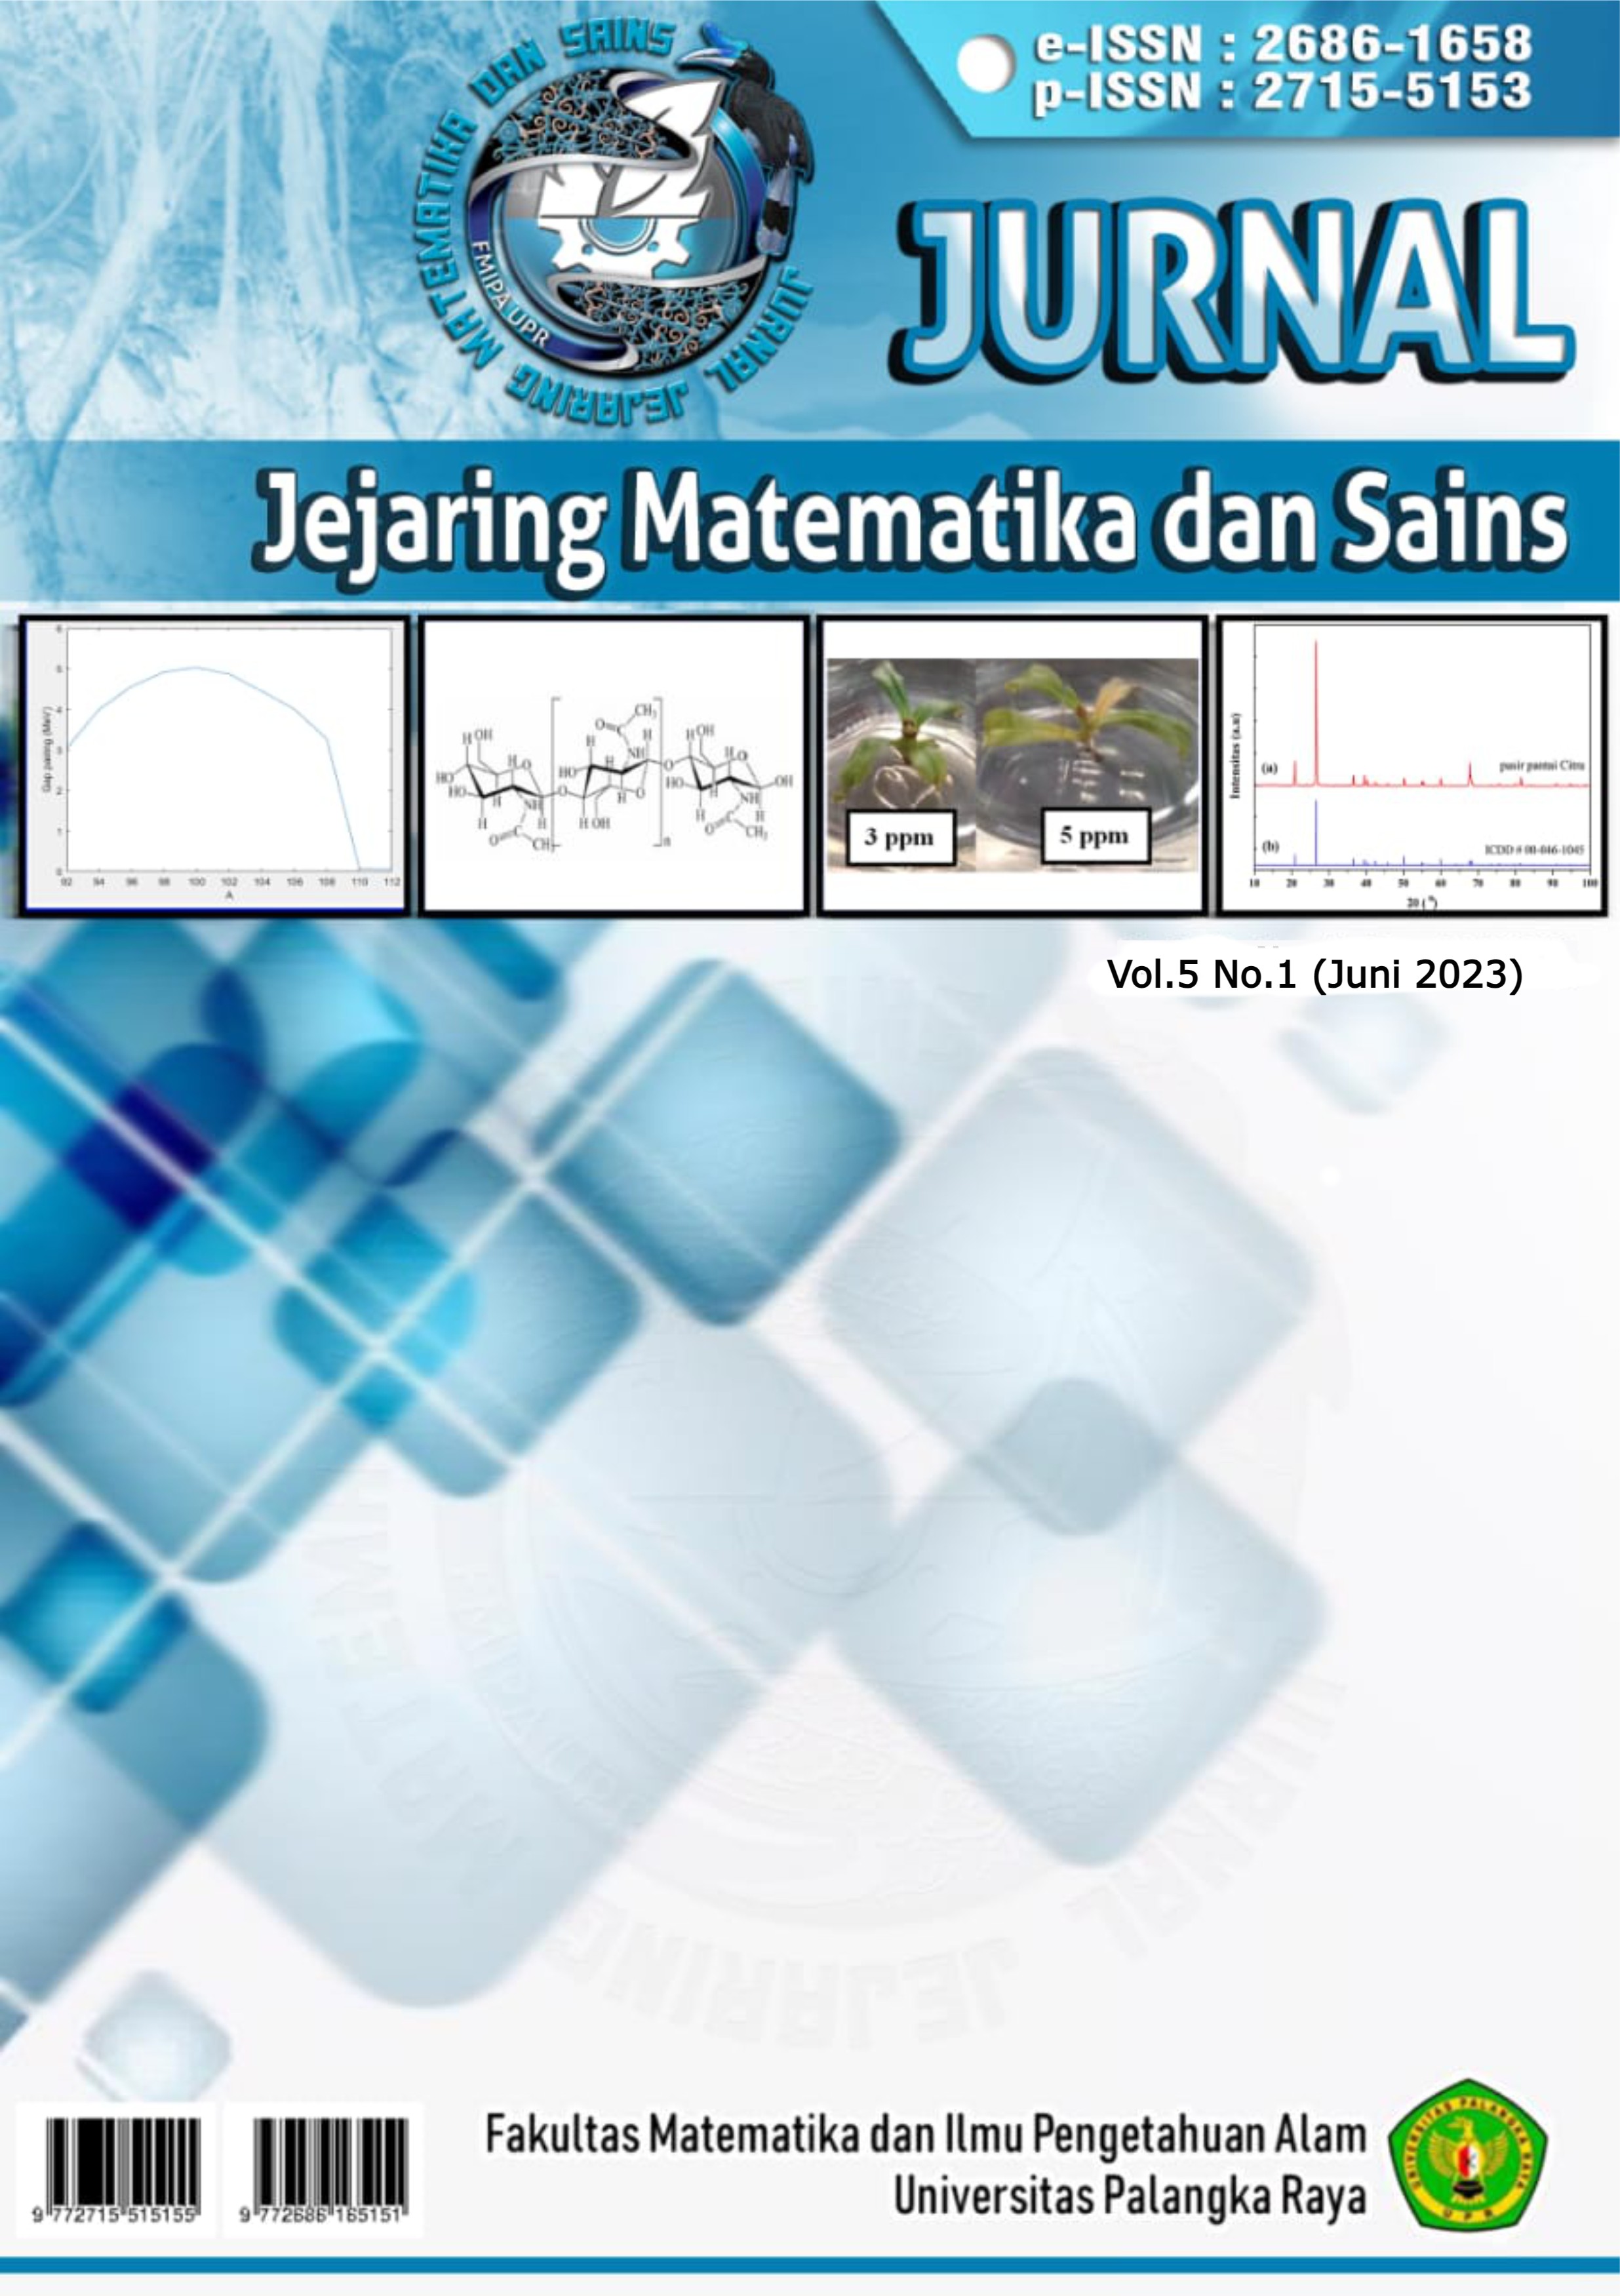 					Lihat Vol 5 No 1 (2023): Jurnal Jejaring Matematika dan Sains
				